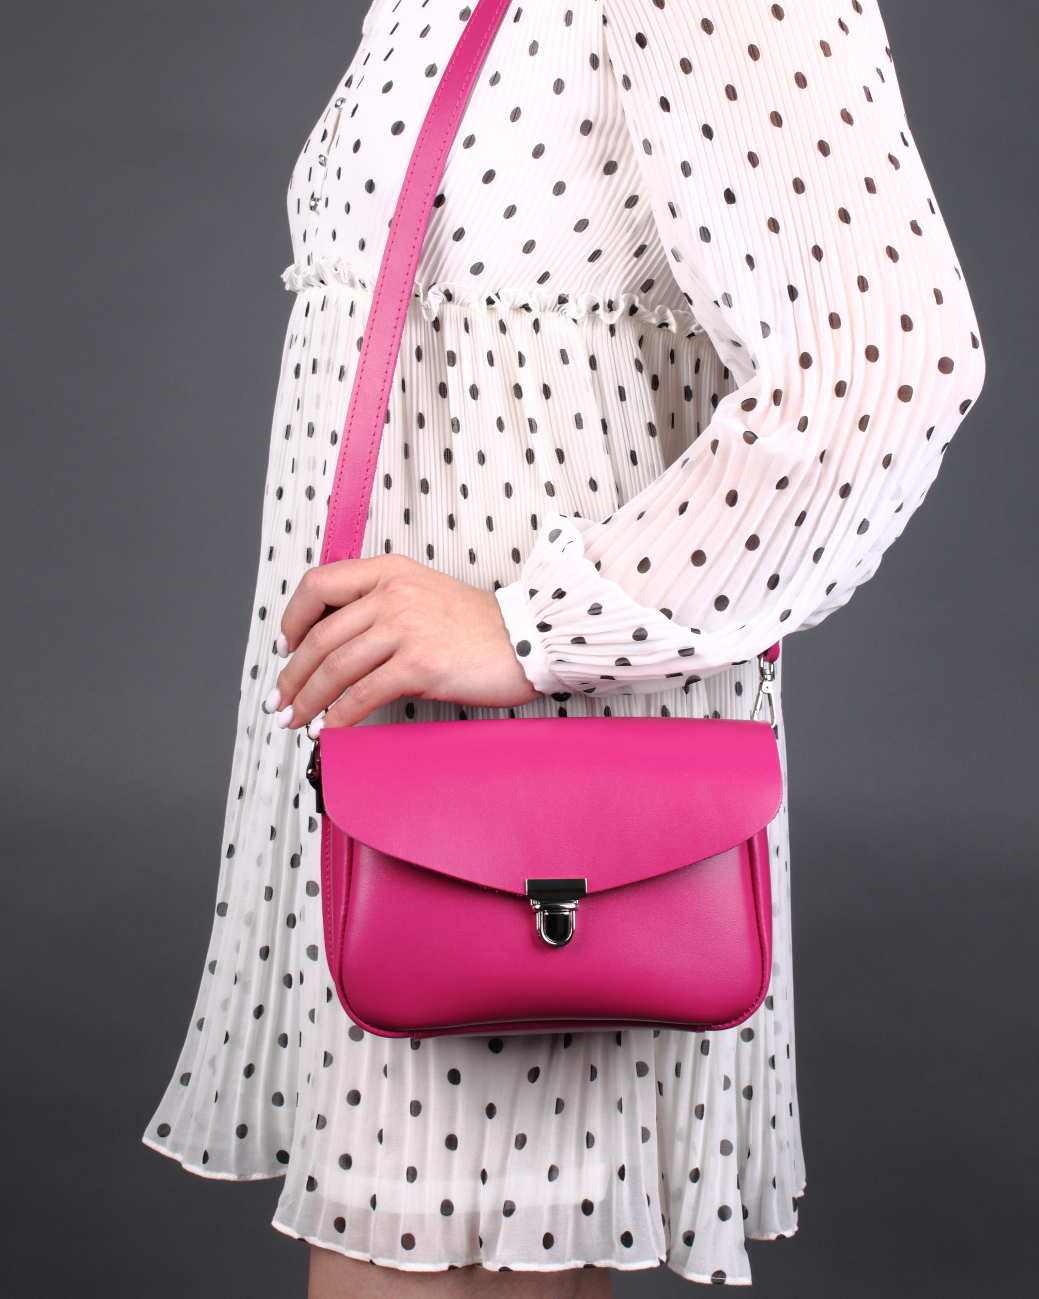 Женская сумка через плечо из натуральной кожи розовая A001 fuchsia